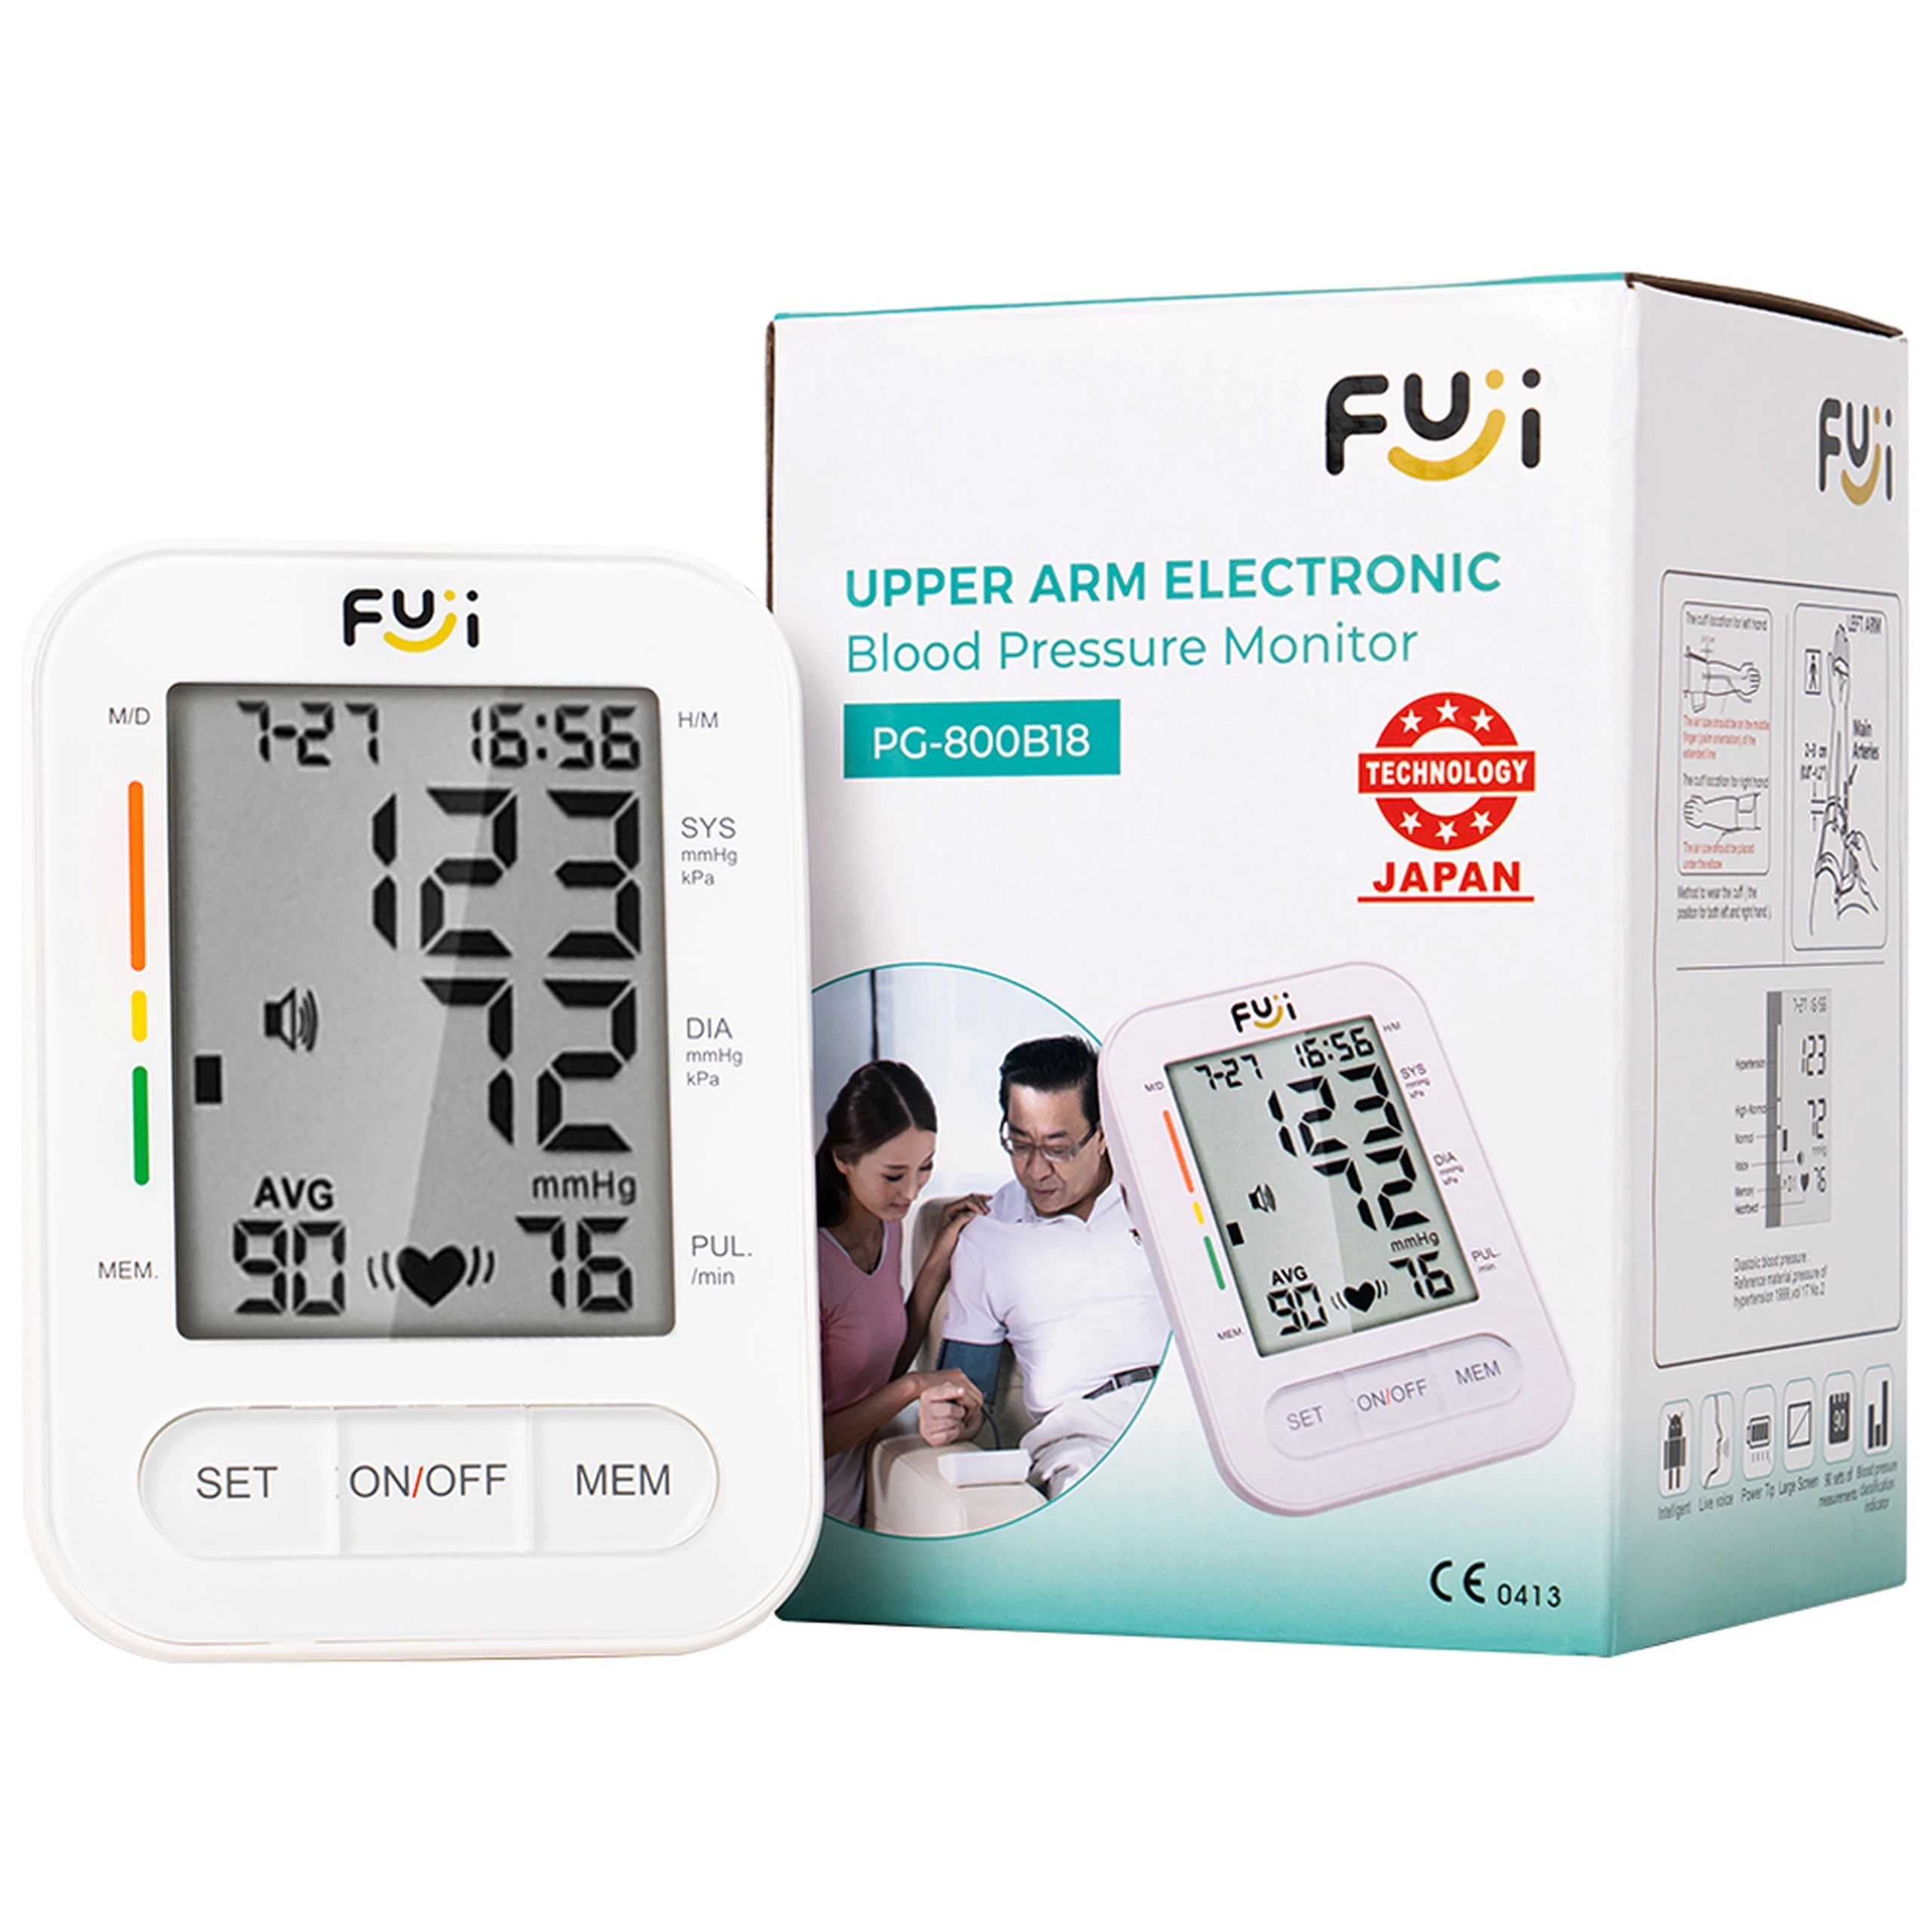 Máy đo huyết áp bắp tay Fuji PG-800B18 hỗ trợ đo huyết áp